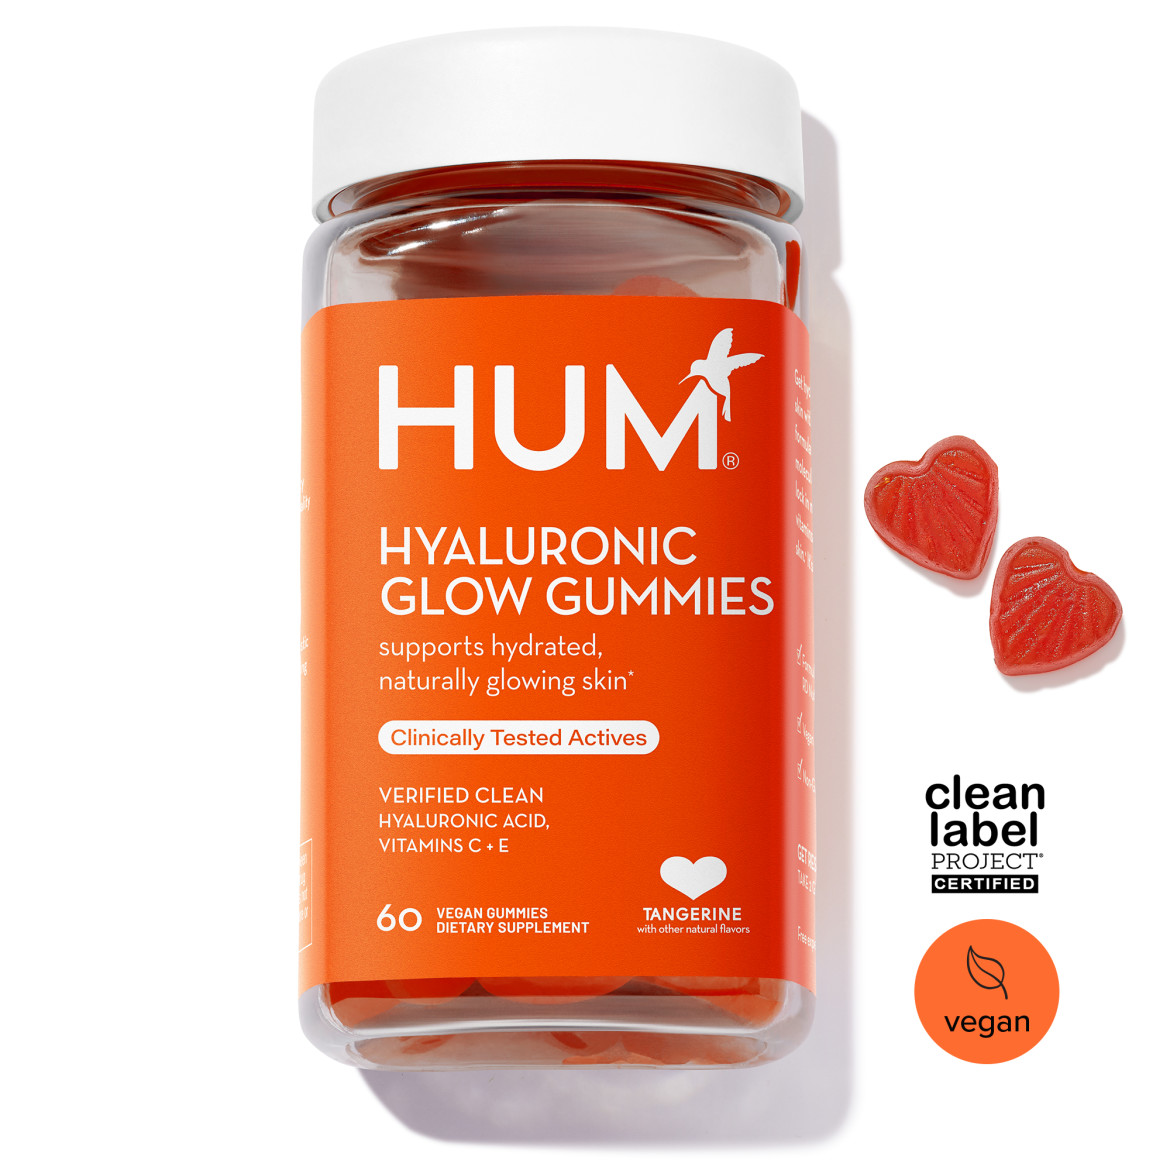 Hyaluronic Glow Gummies